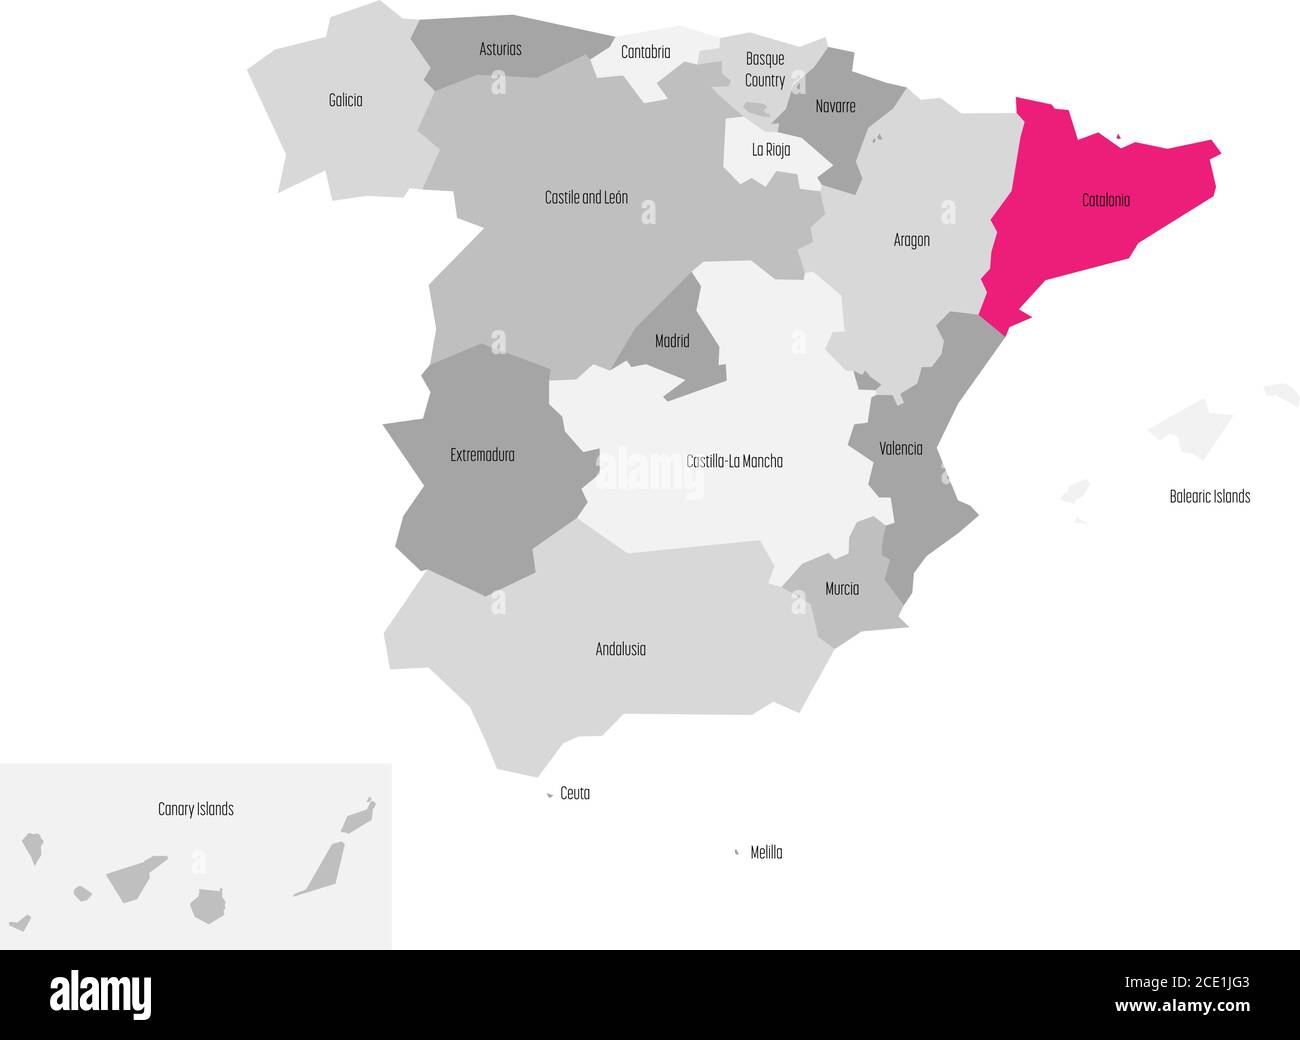 Karte von Spanien aufgeteilt auf 17 administrative autonome Gemeinden mit rosa hervorgehoben Katalonien Region. Einfache flache Vektorkarte in Graustufen. Stock Vektor